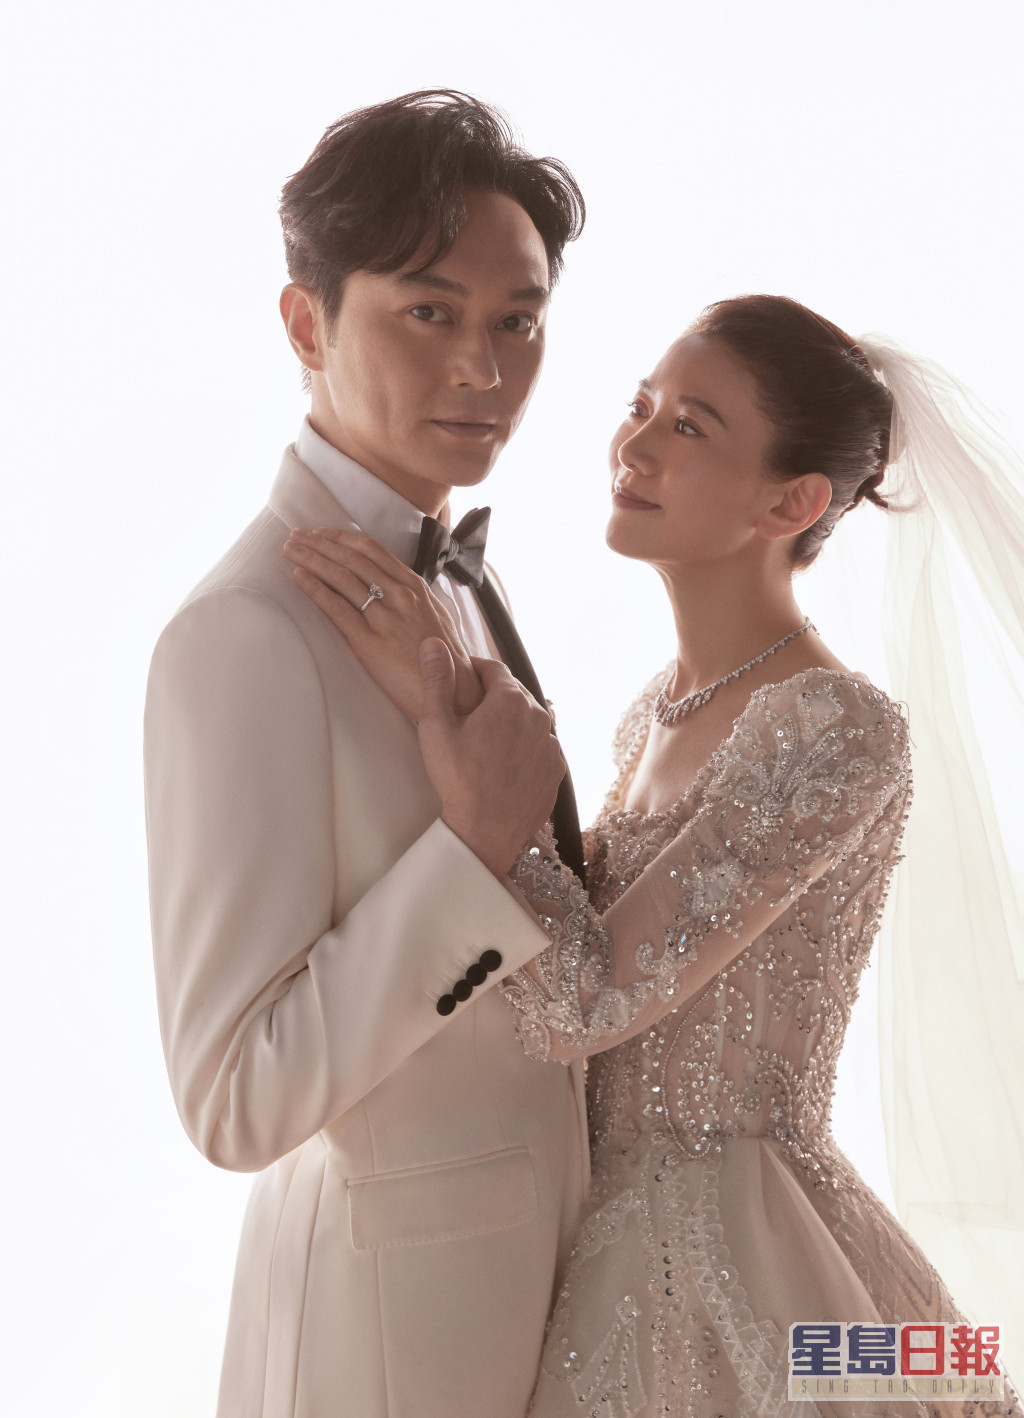 张智霖工作室同时公开多张婚纱相。